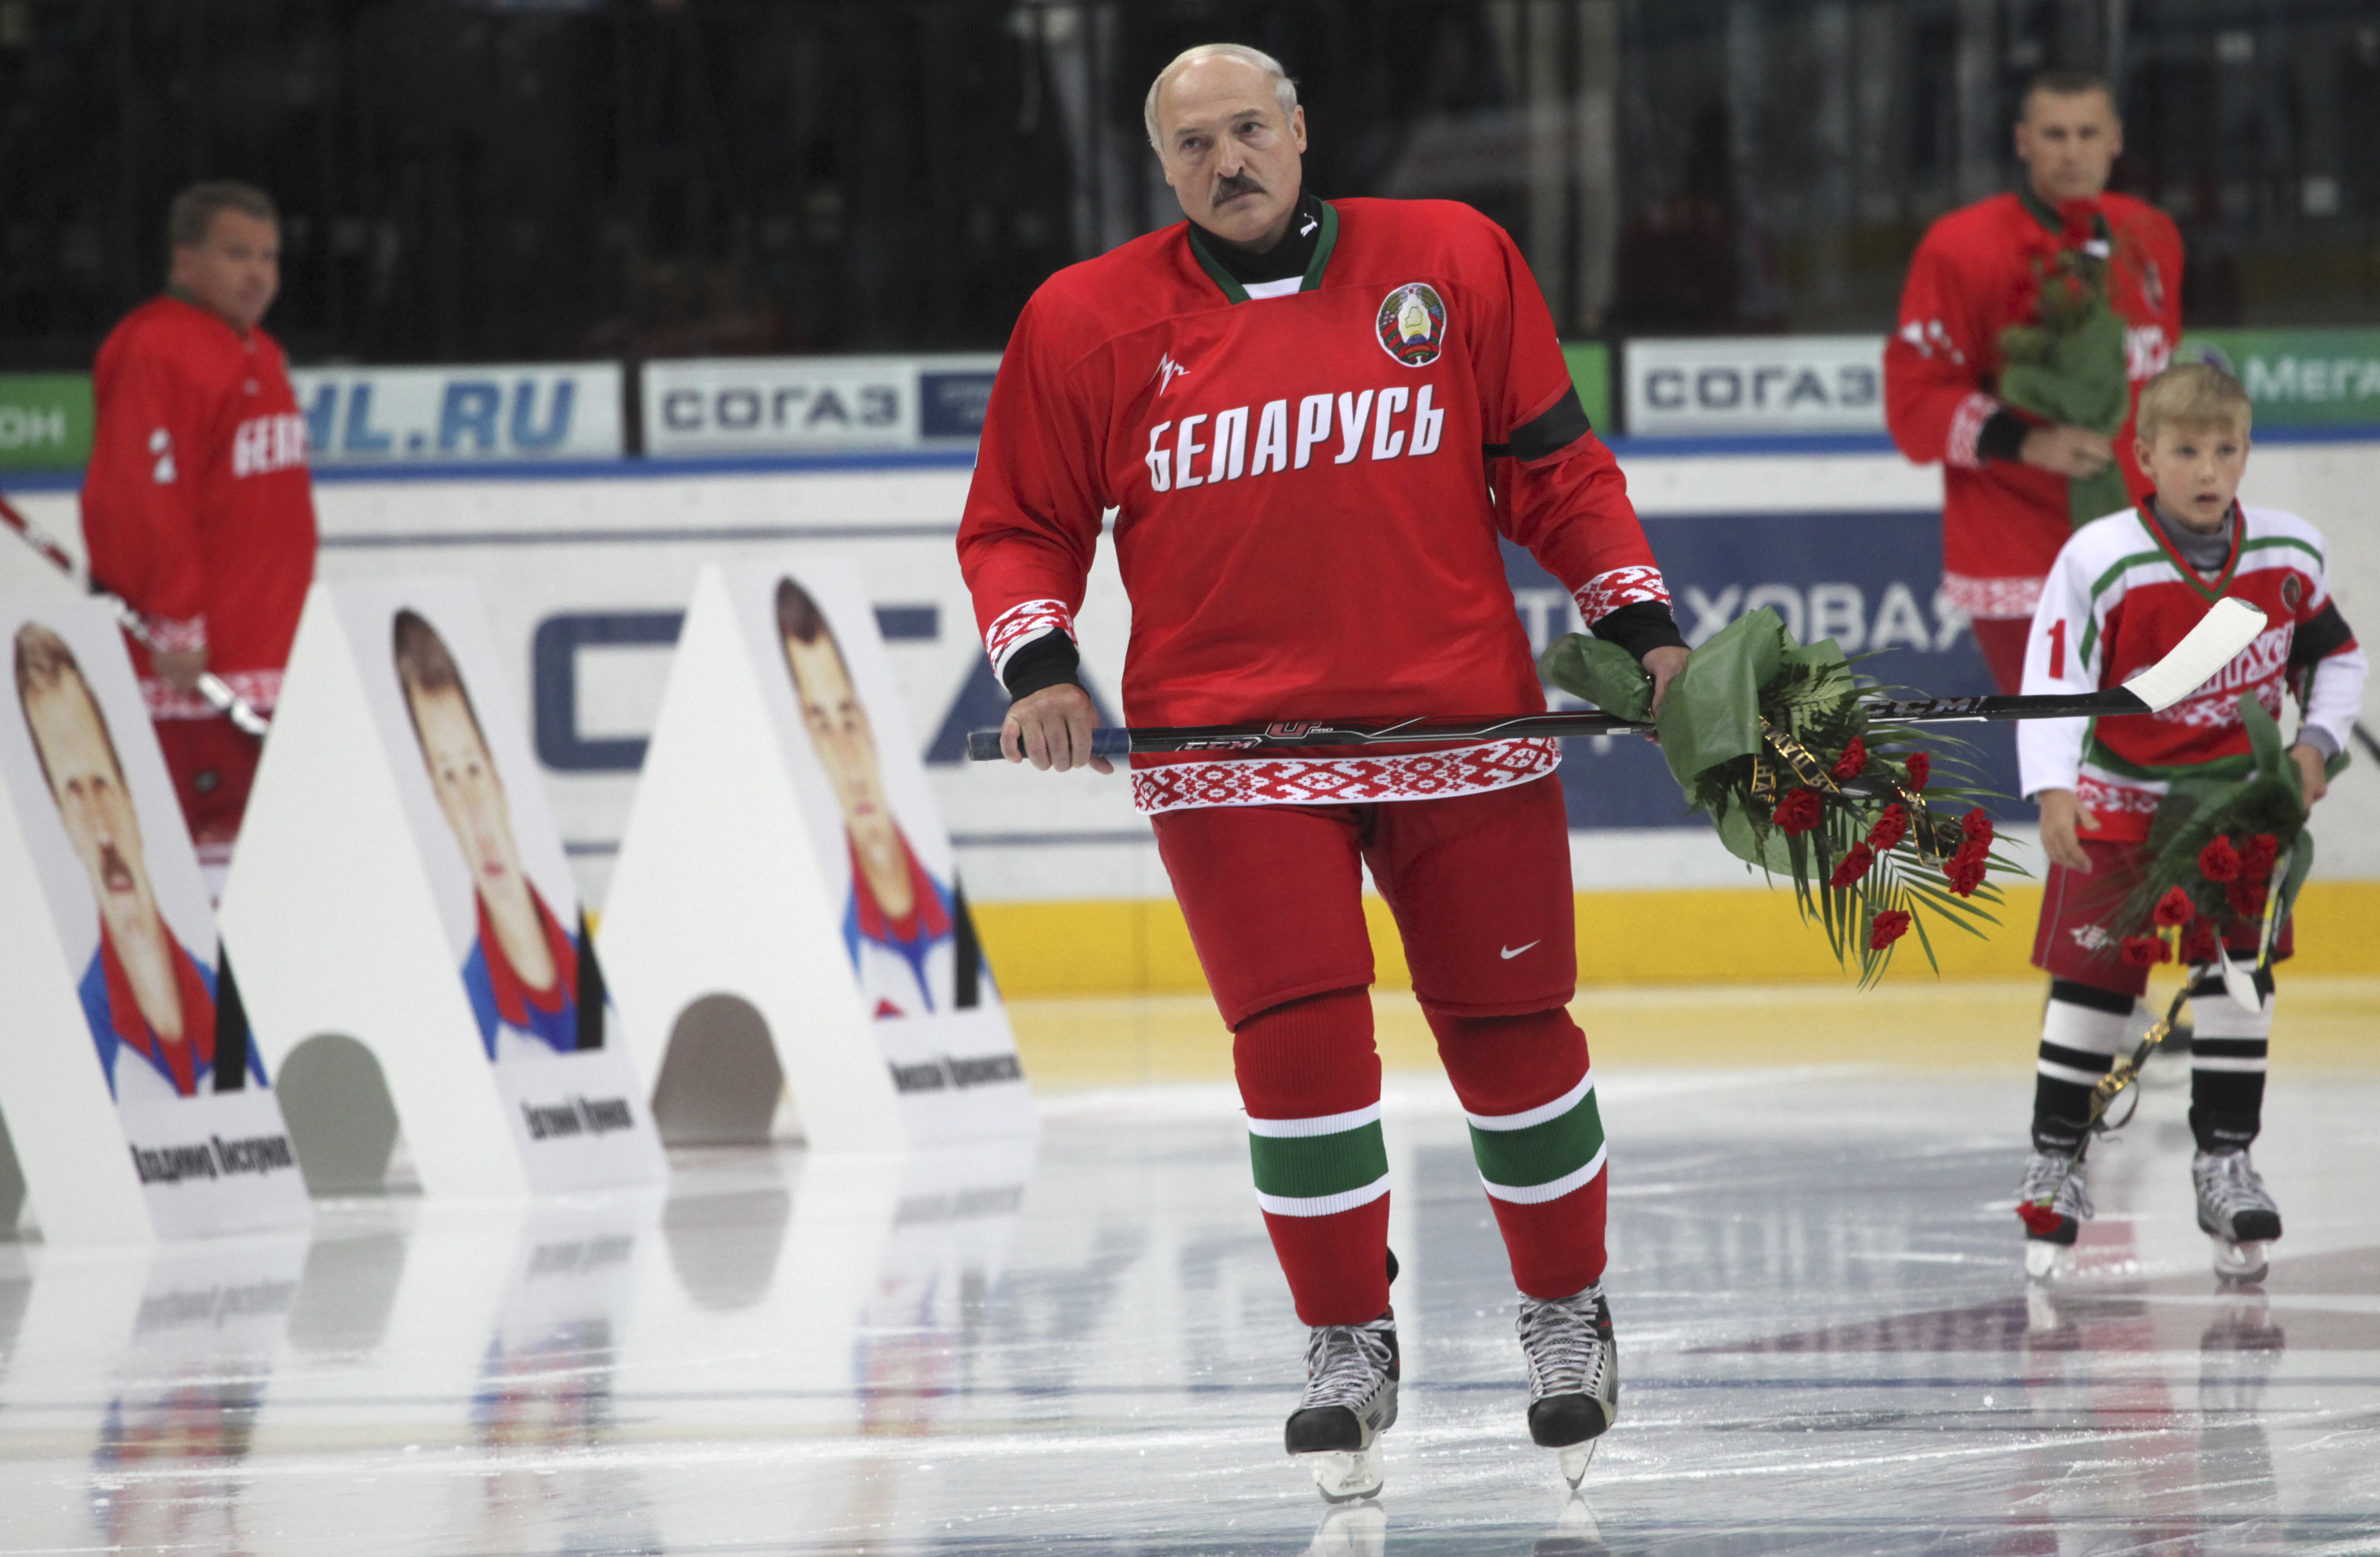 ishockey, Mänskliga rättigheter, Aleksandr Lukasjenko, Demokrati, Christer Englund, Vitryssland, Tre Kronor, VM